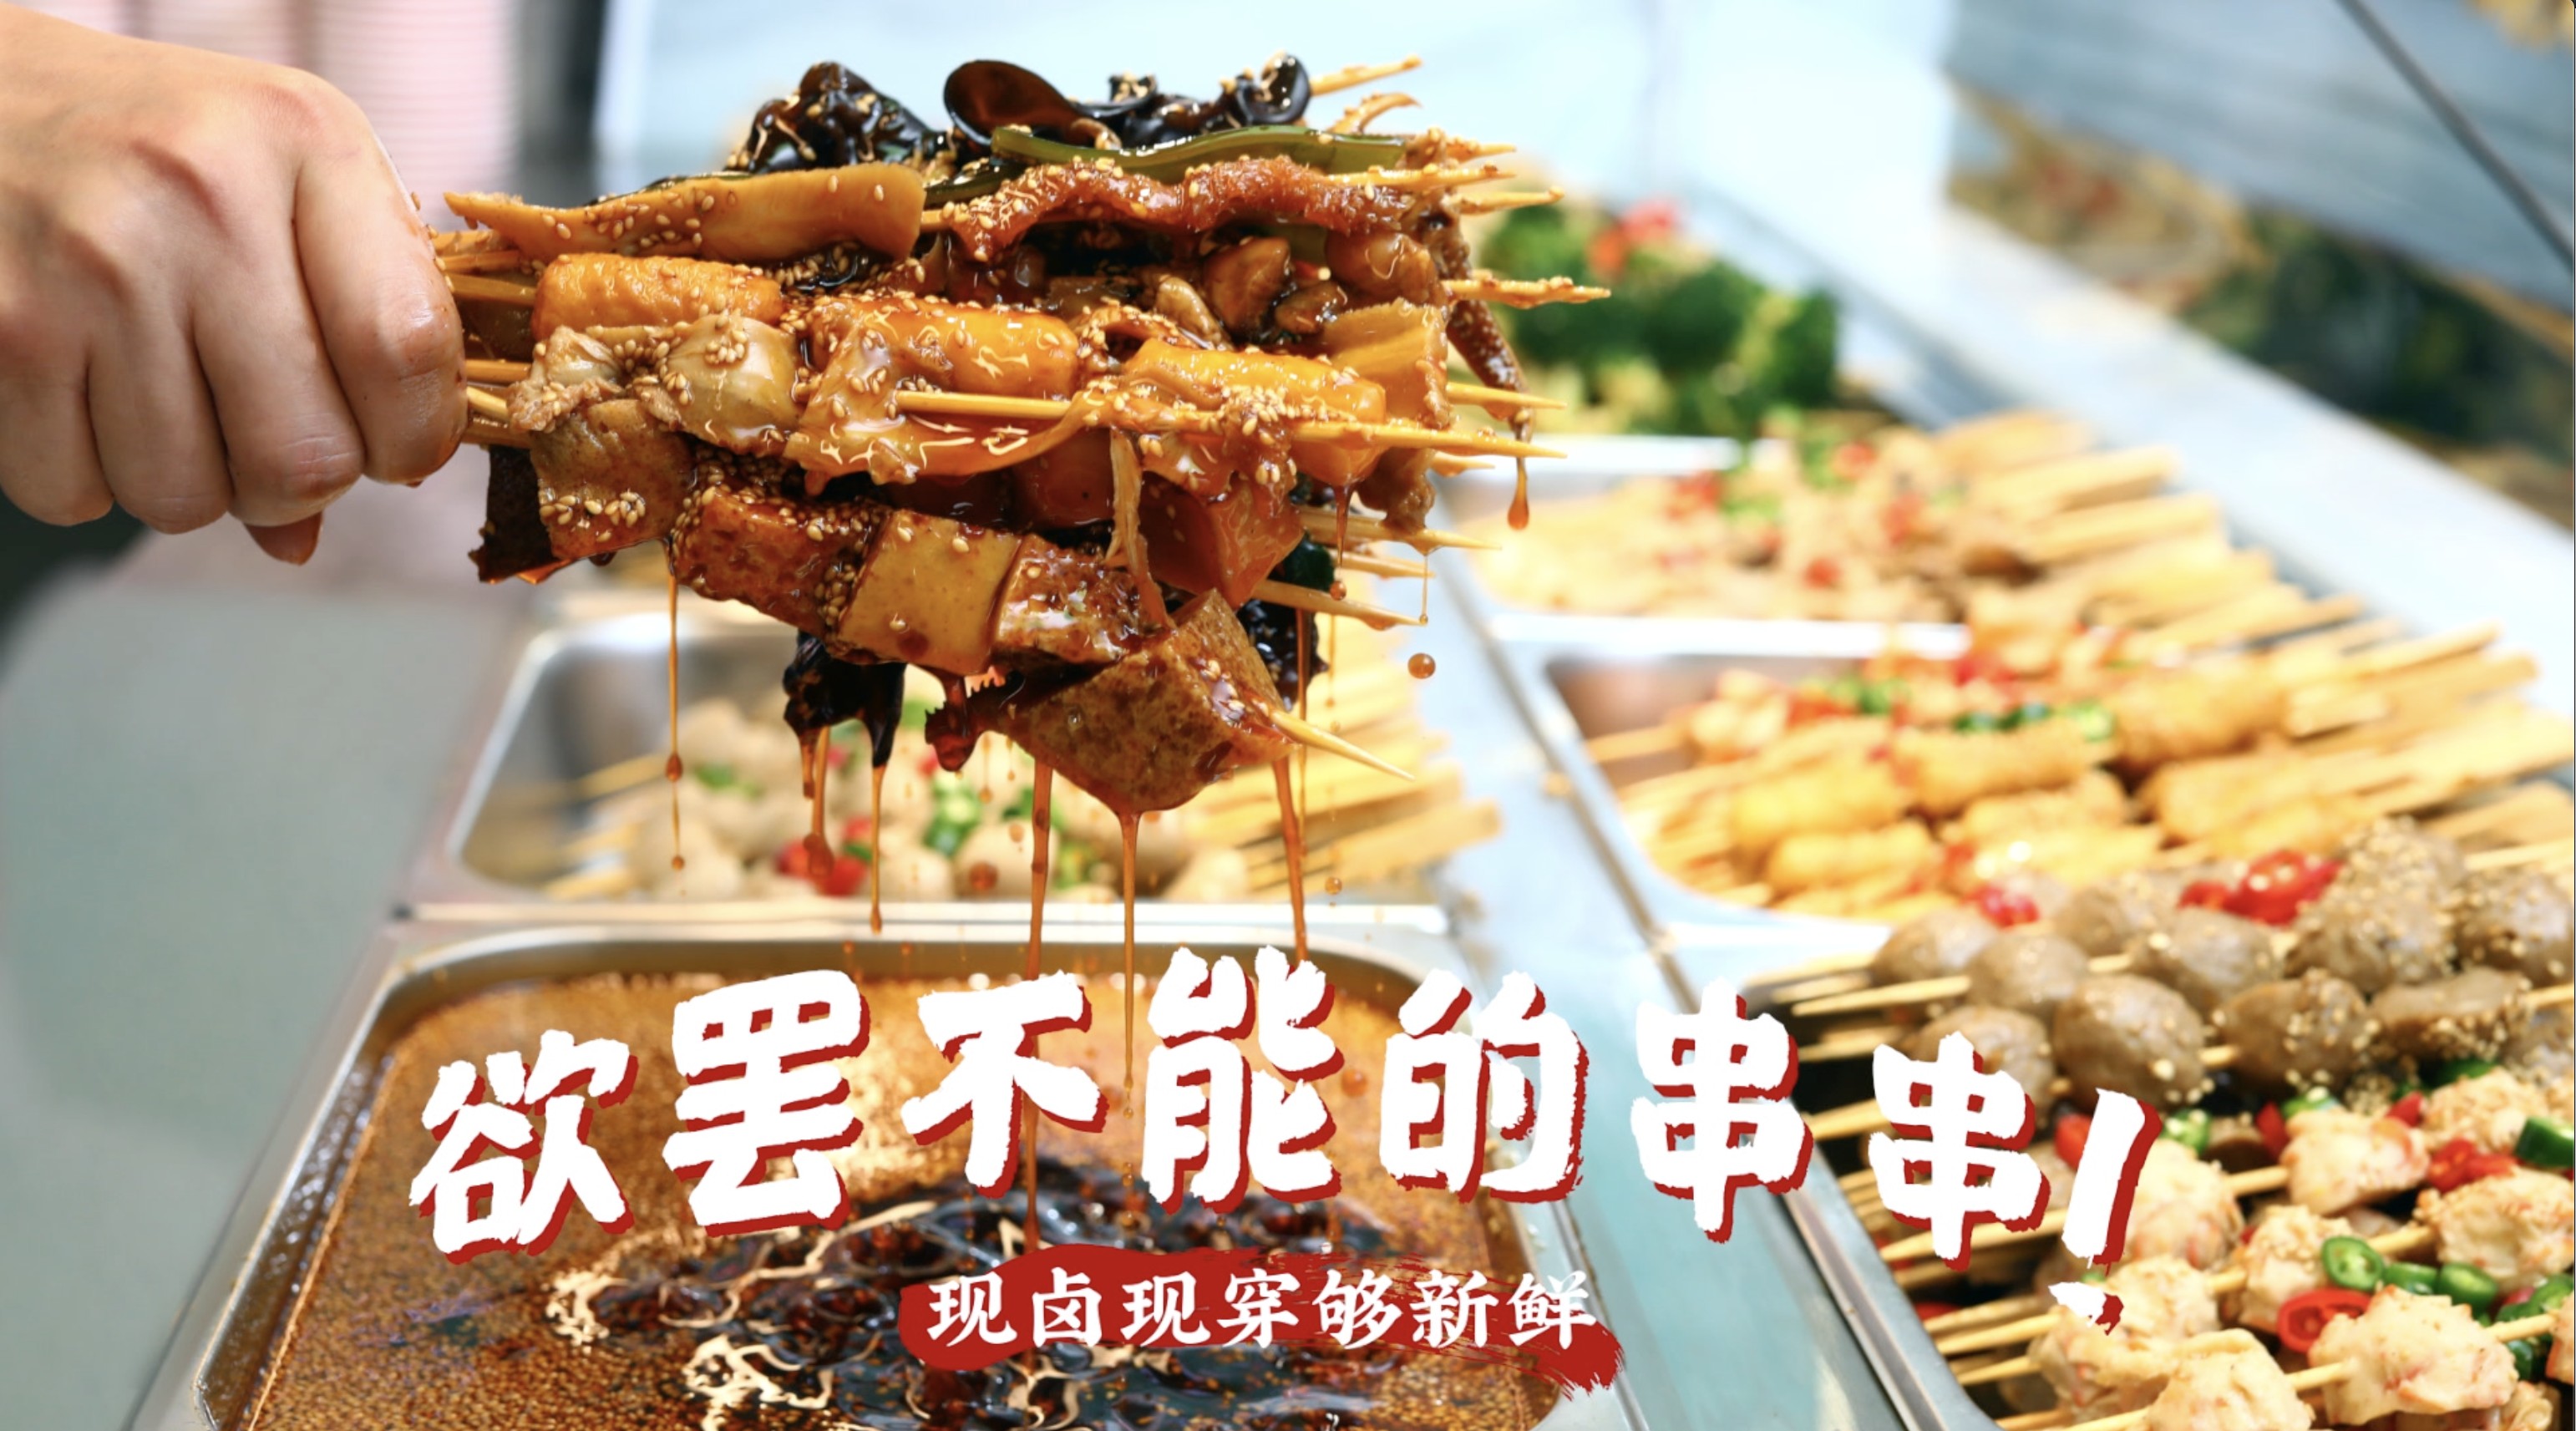 美食短视频——郑州我是你的菜冷锅串串 